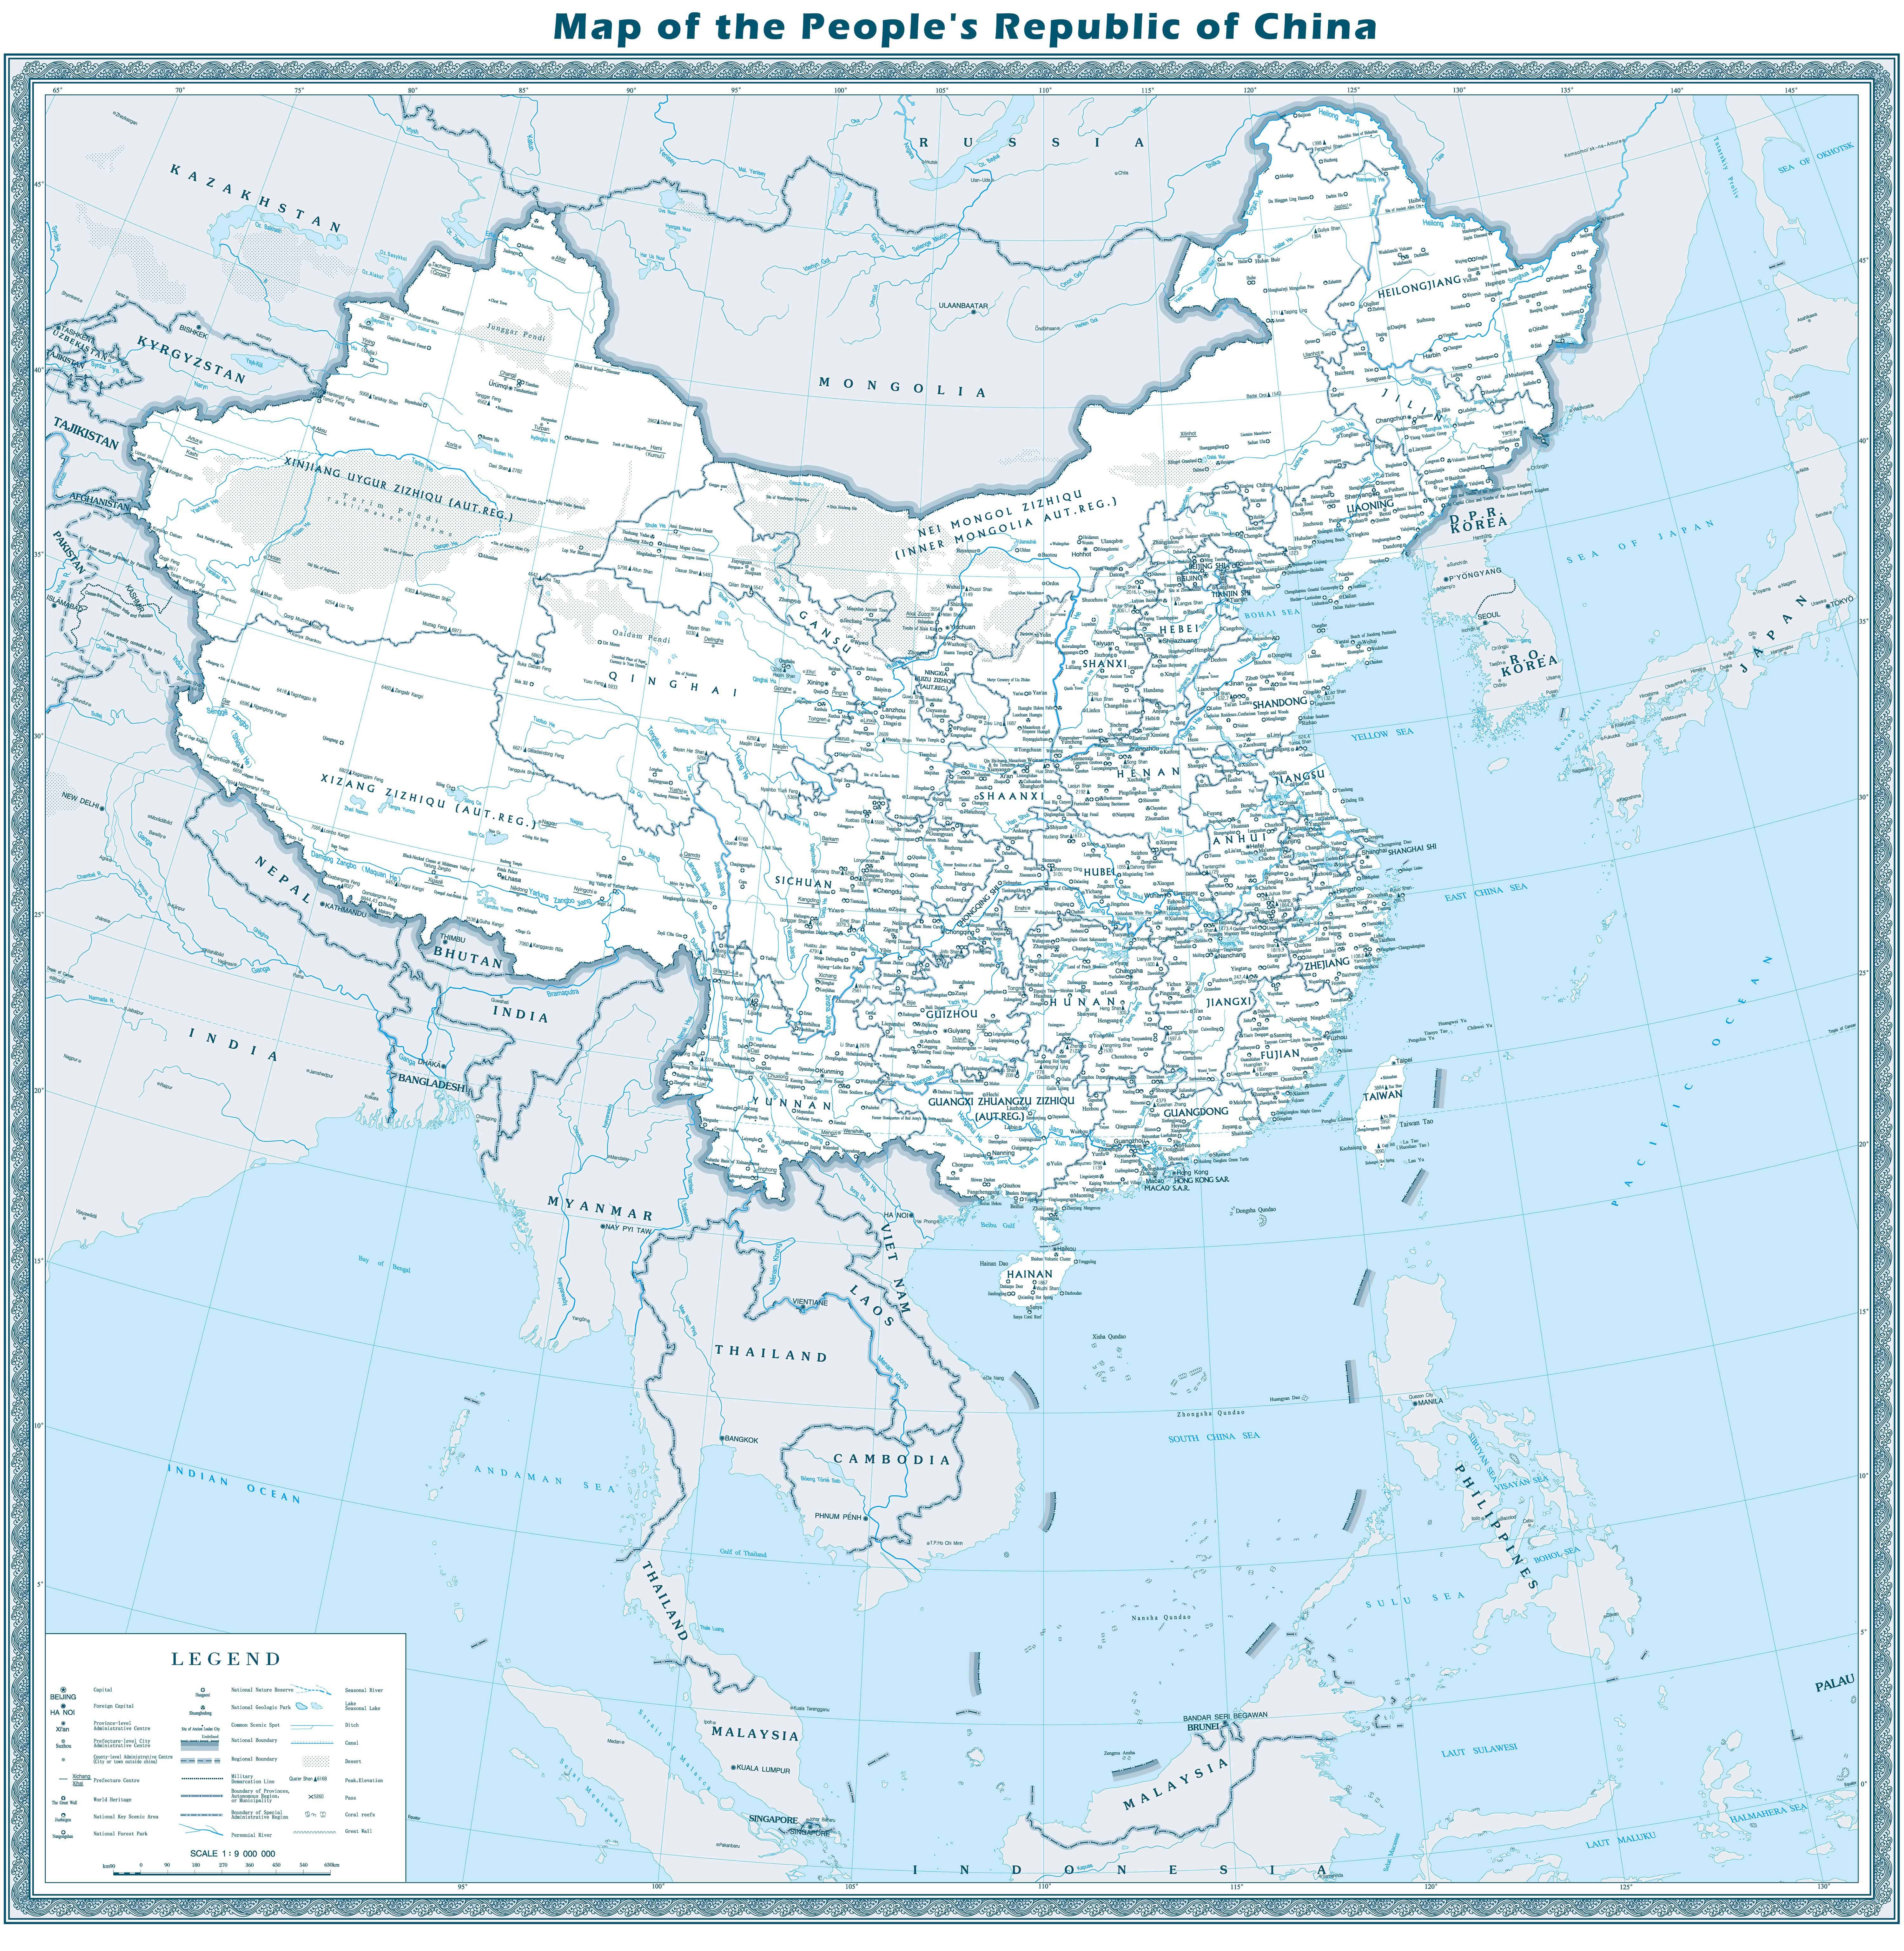 China Map Virtual Tour Maps Of Beijing Shanghai Xi An Guilin